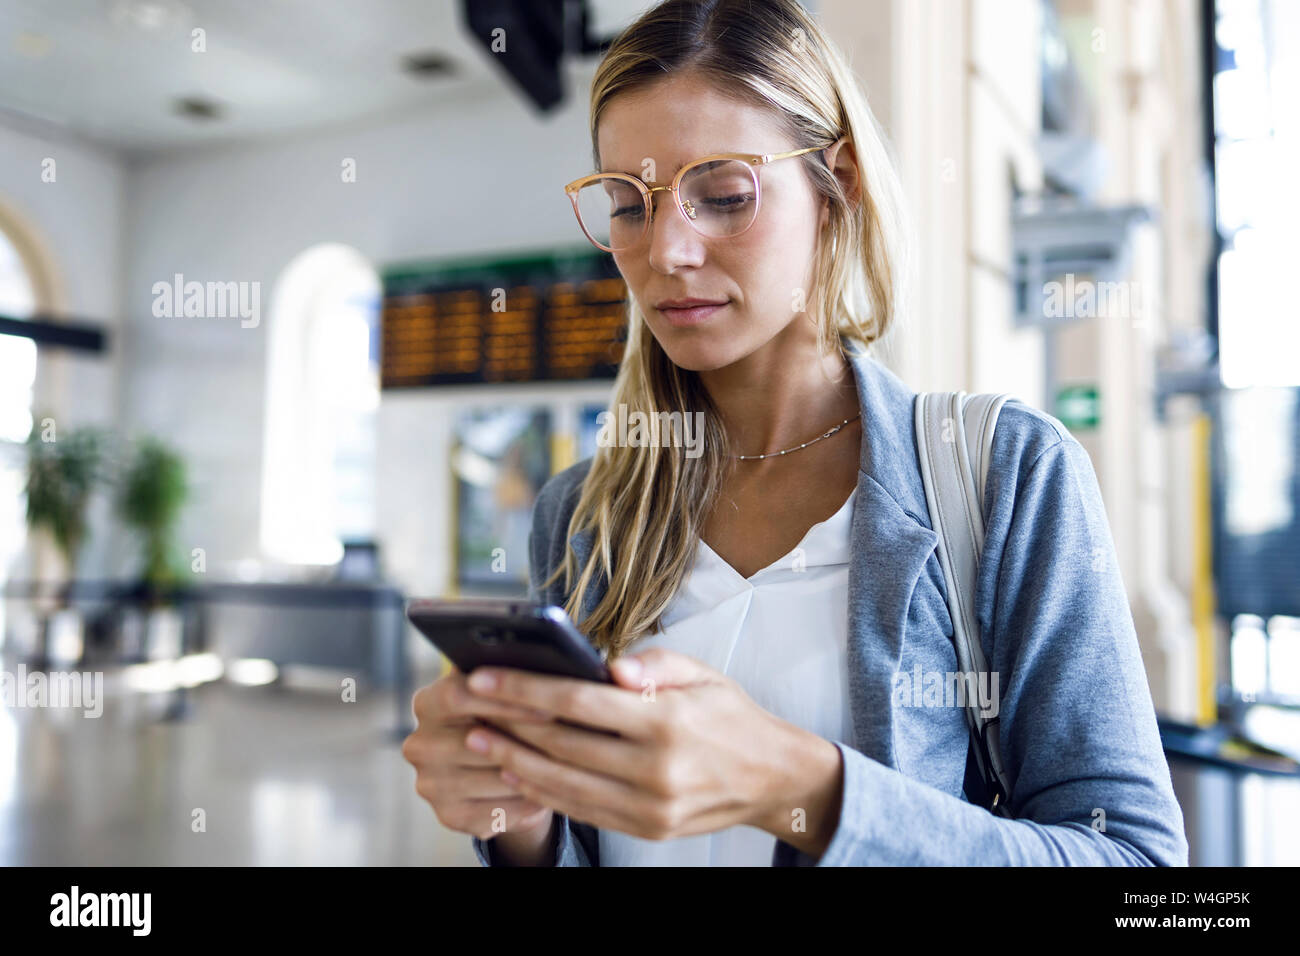 Jeune femme textos avec son téléphone portable dans le hall de la gare Banque D'Images